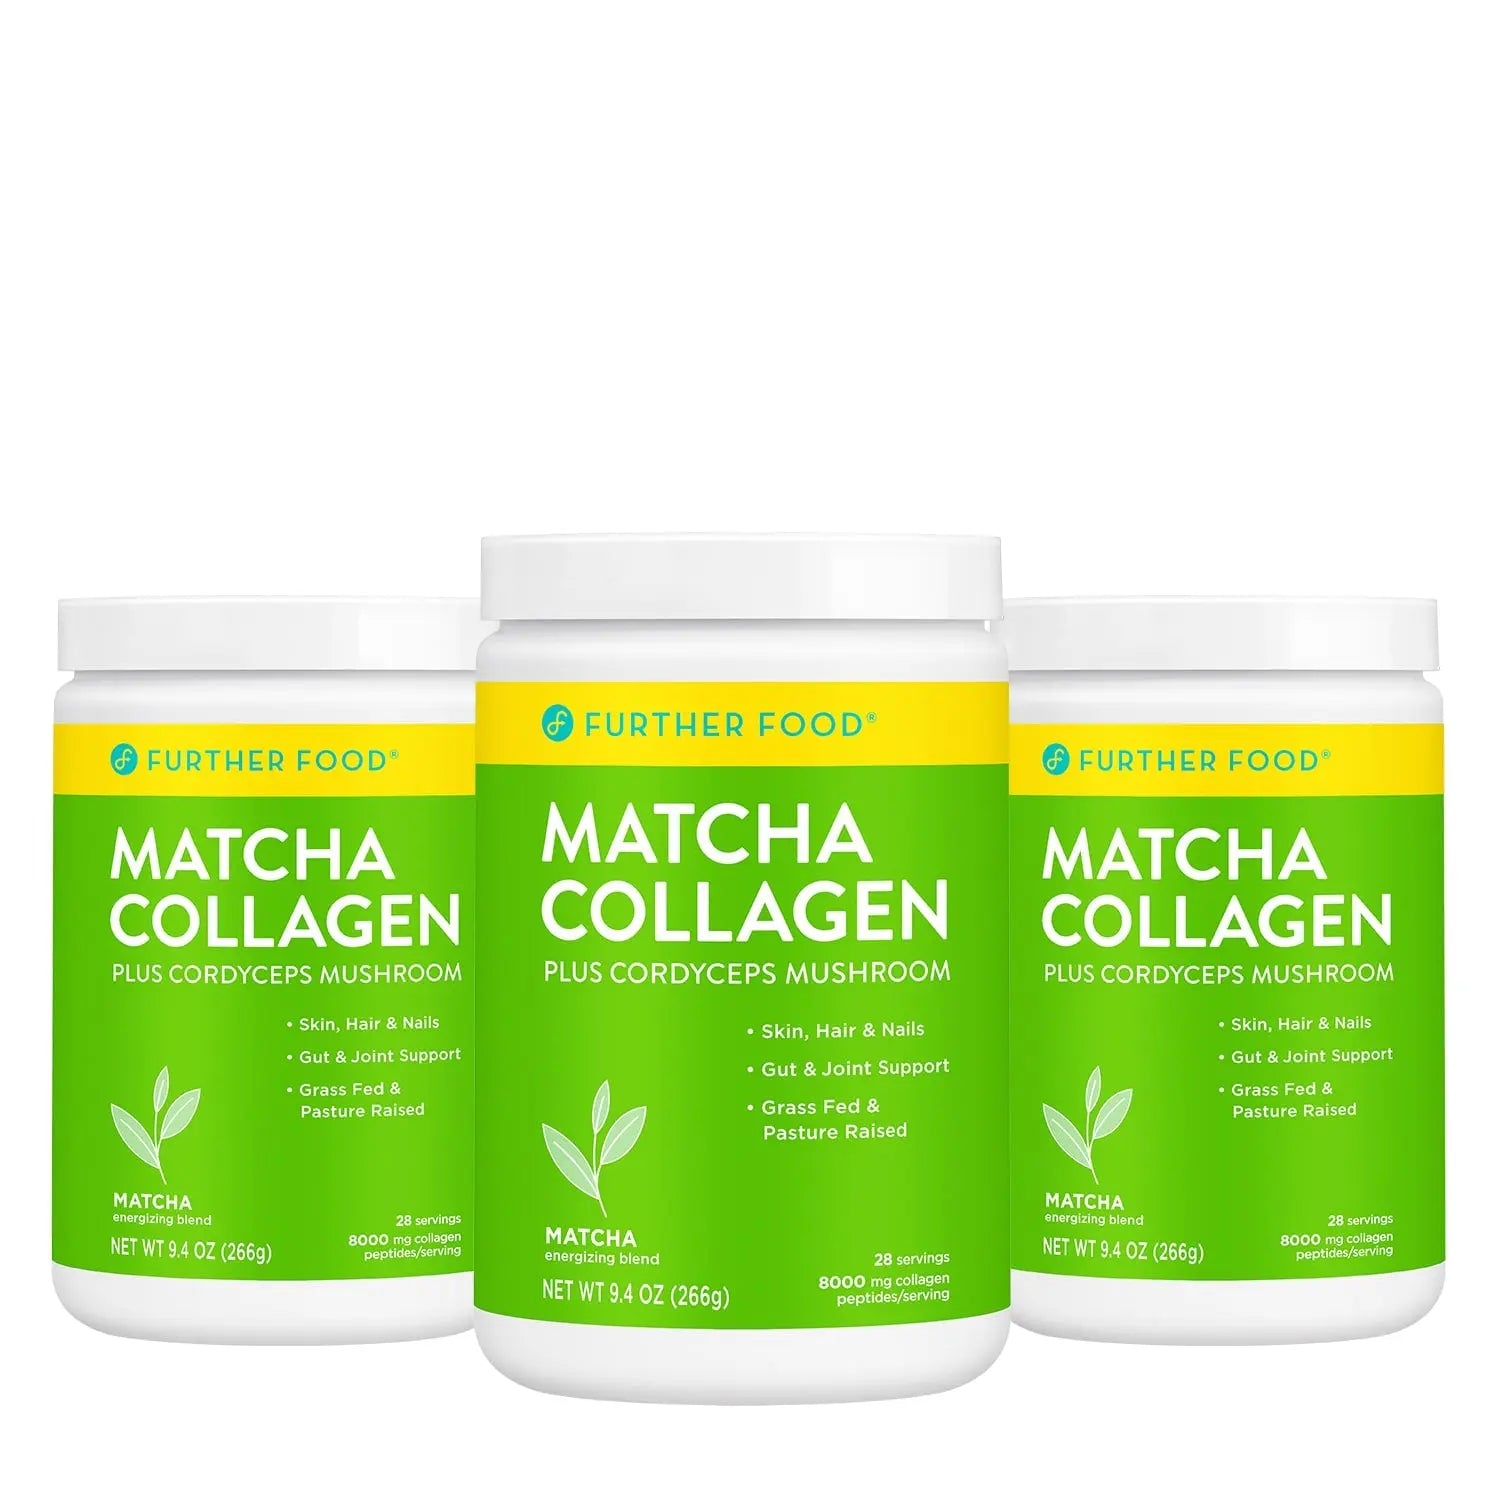 Matcha Collagen